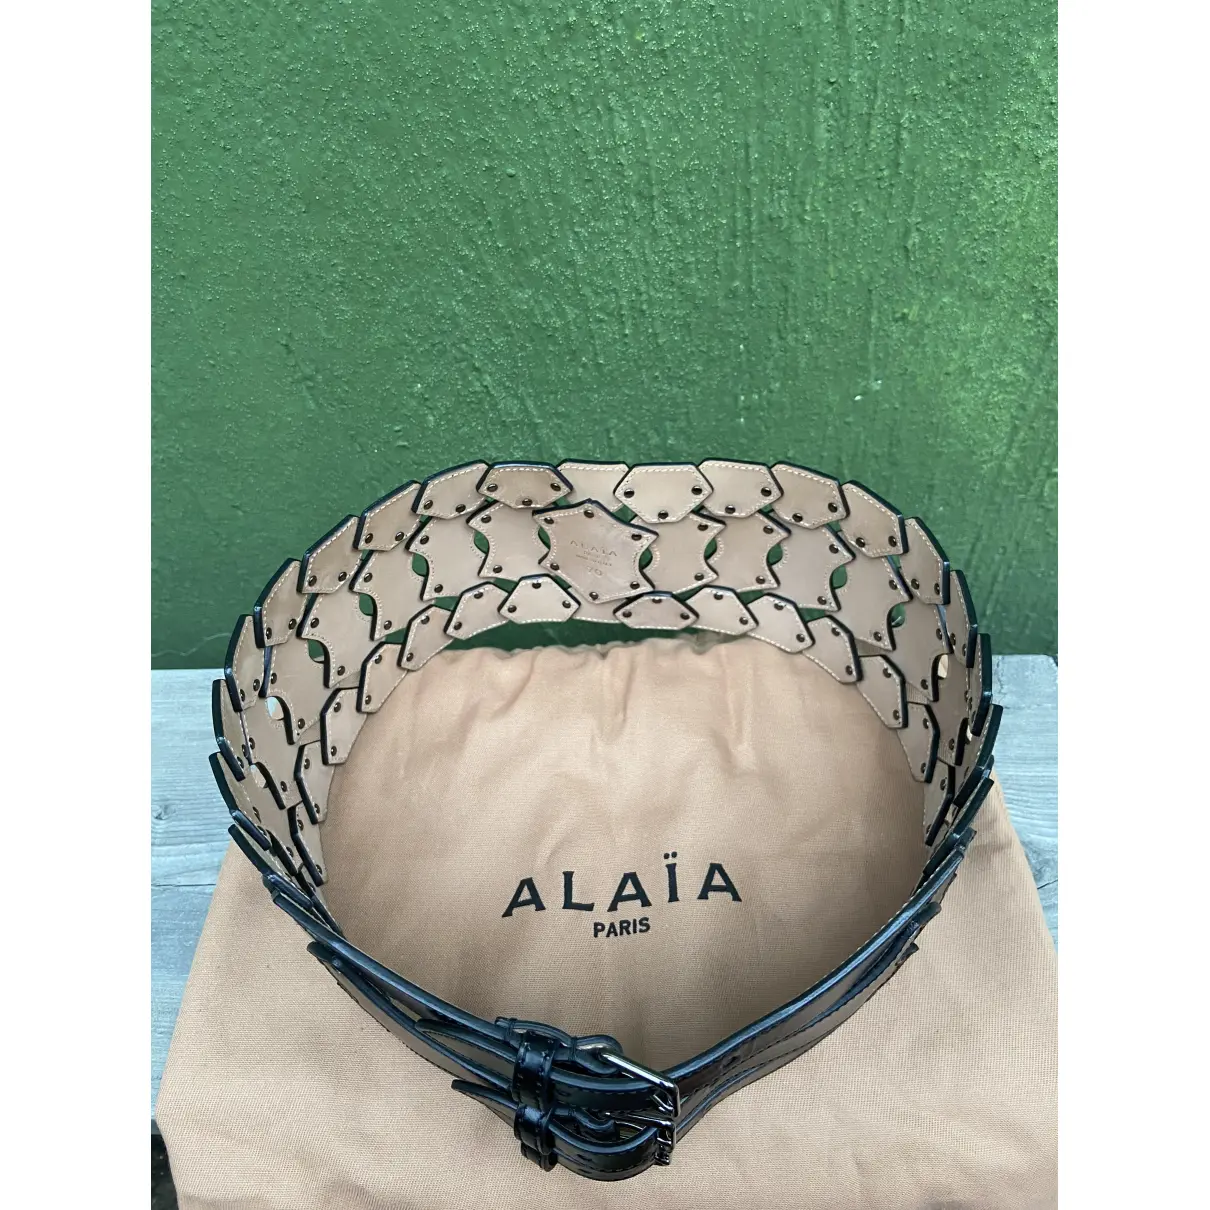 Buy Alaïa Leather belt online